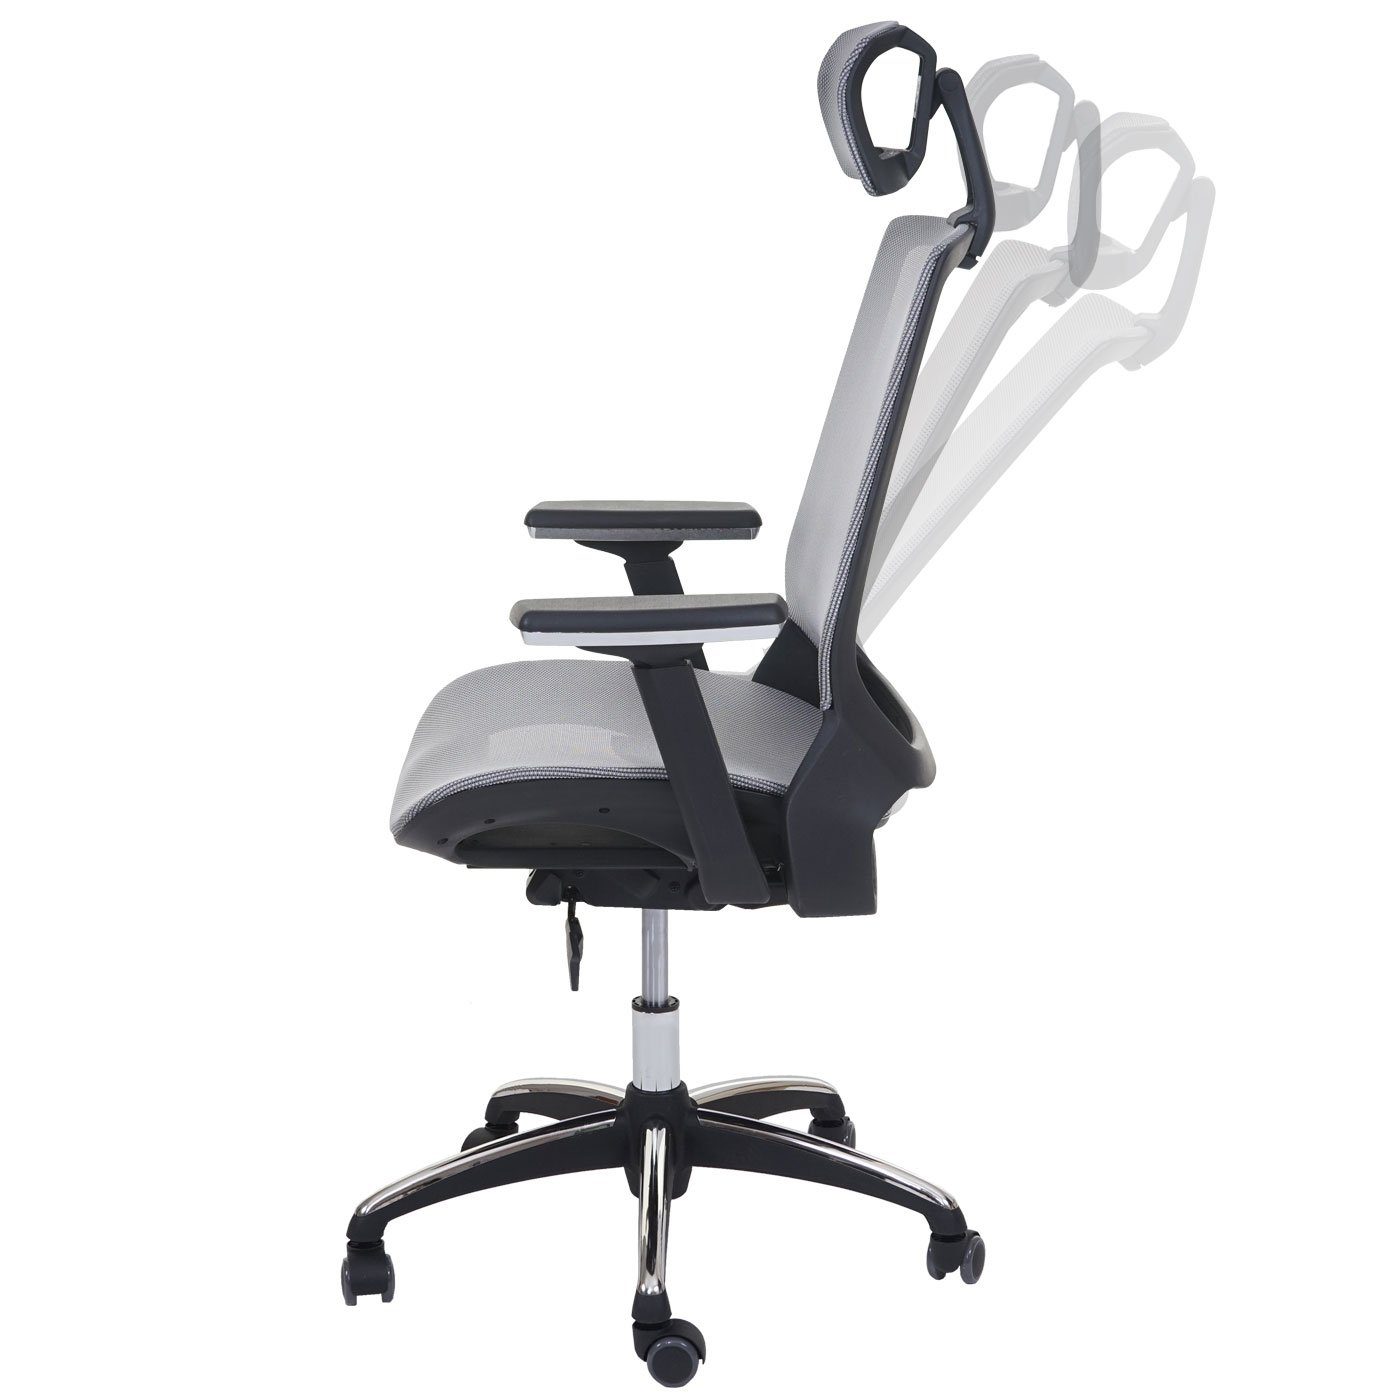 MCW Schreibtischstuhl MCW-A59, Höhenverstellbare Sitzfläche Kopfstütze, tiefenverstellbare grau